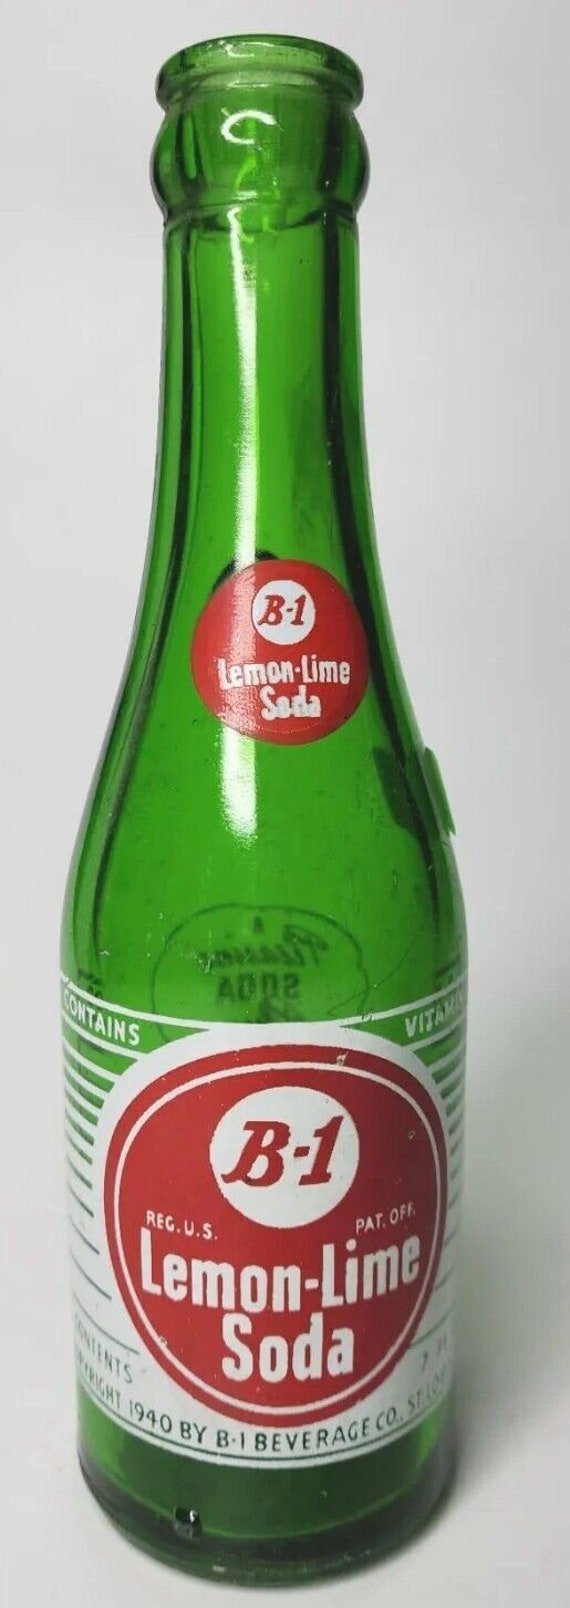 Vtg 1960's pop acl soda bottle 7oz b-1 lemon lime 